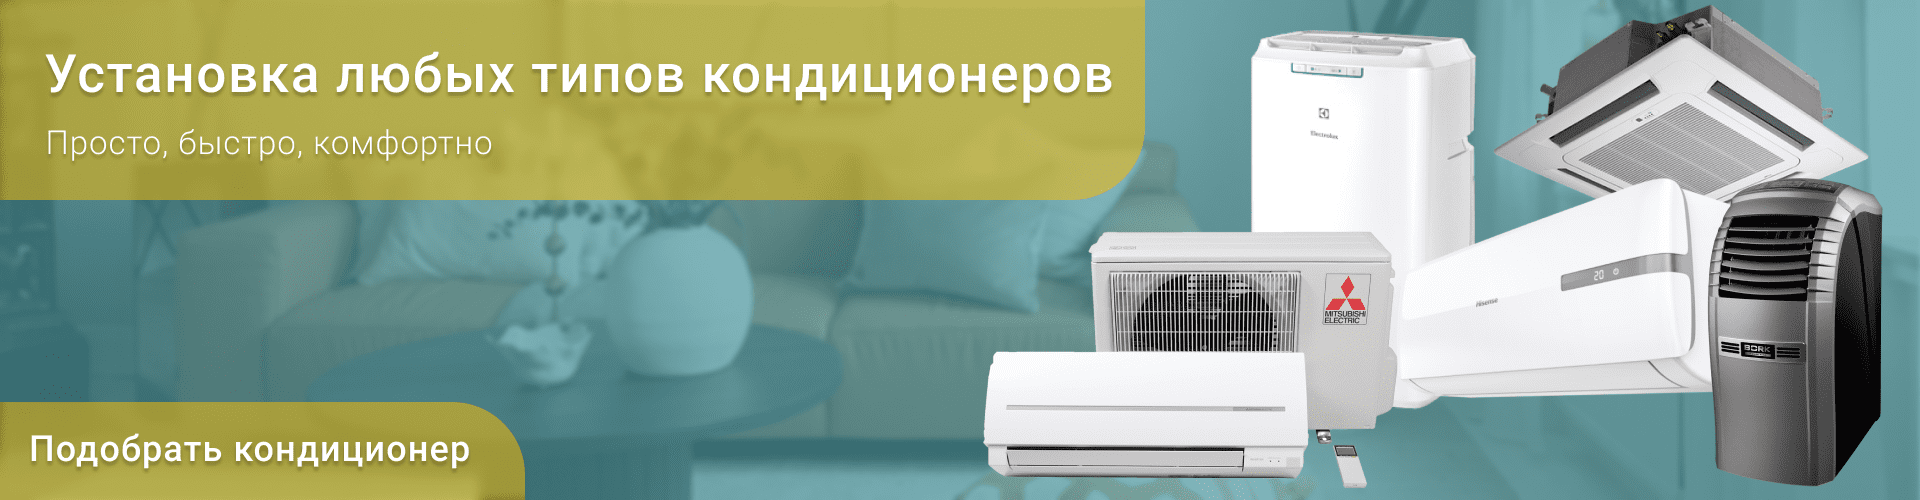 Купить климатическое оборудование, тепловые системы, вентиляция в компании «Климат Маркет» в Томске ✓ Скидка на установку или бесплатное обслуживание ✓ Выгодные цены ✓  Энергосберегающая техника